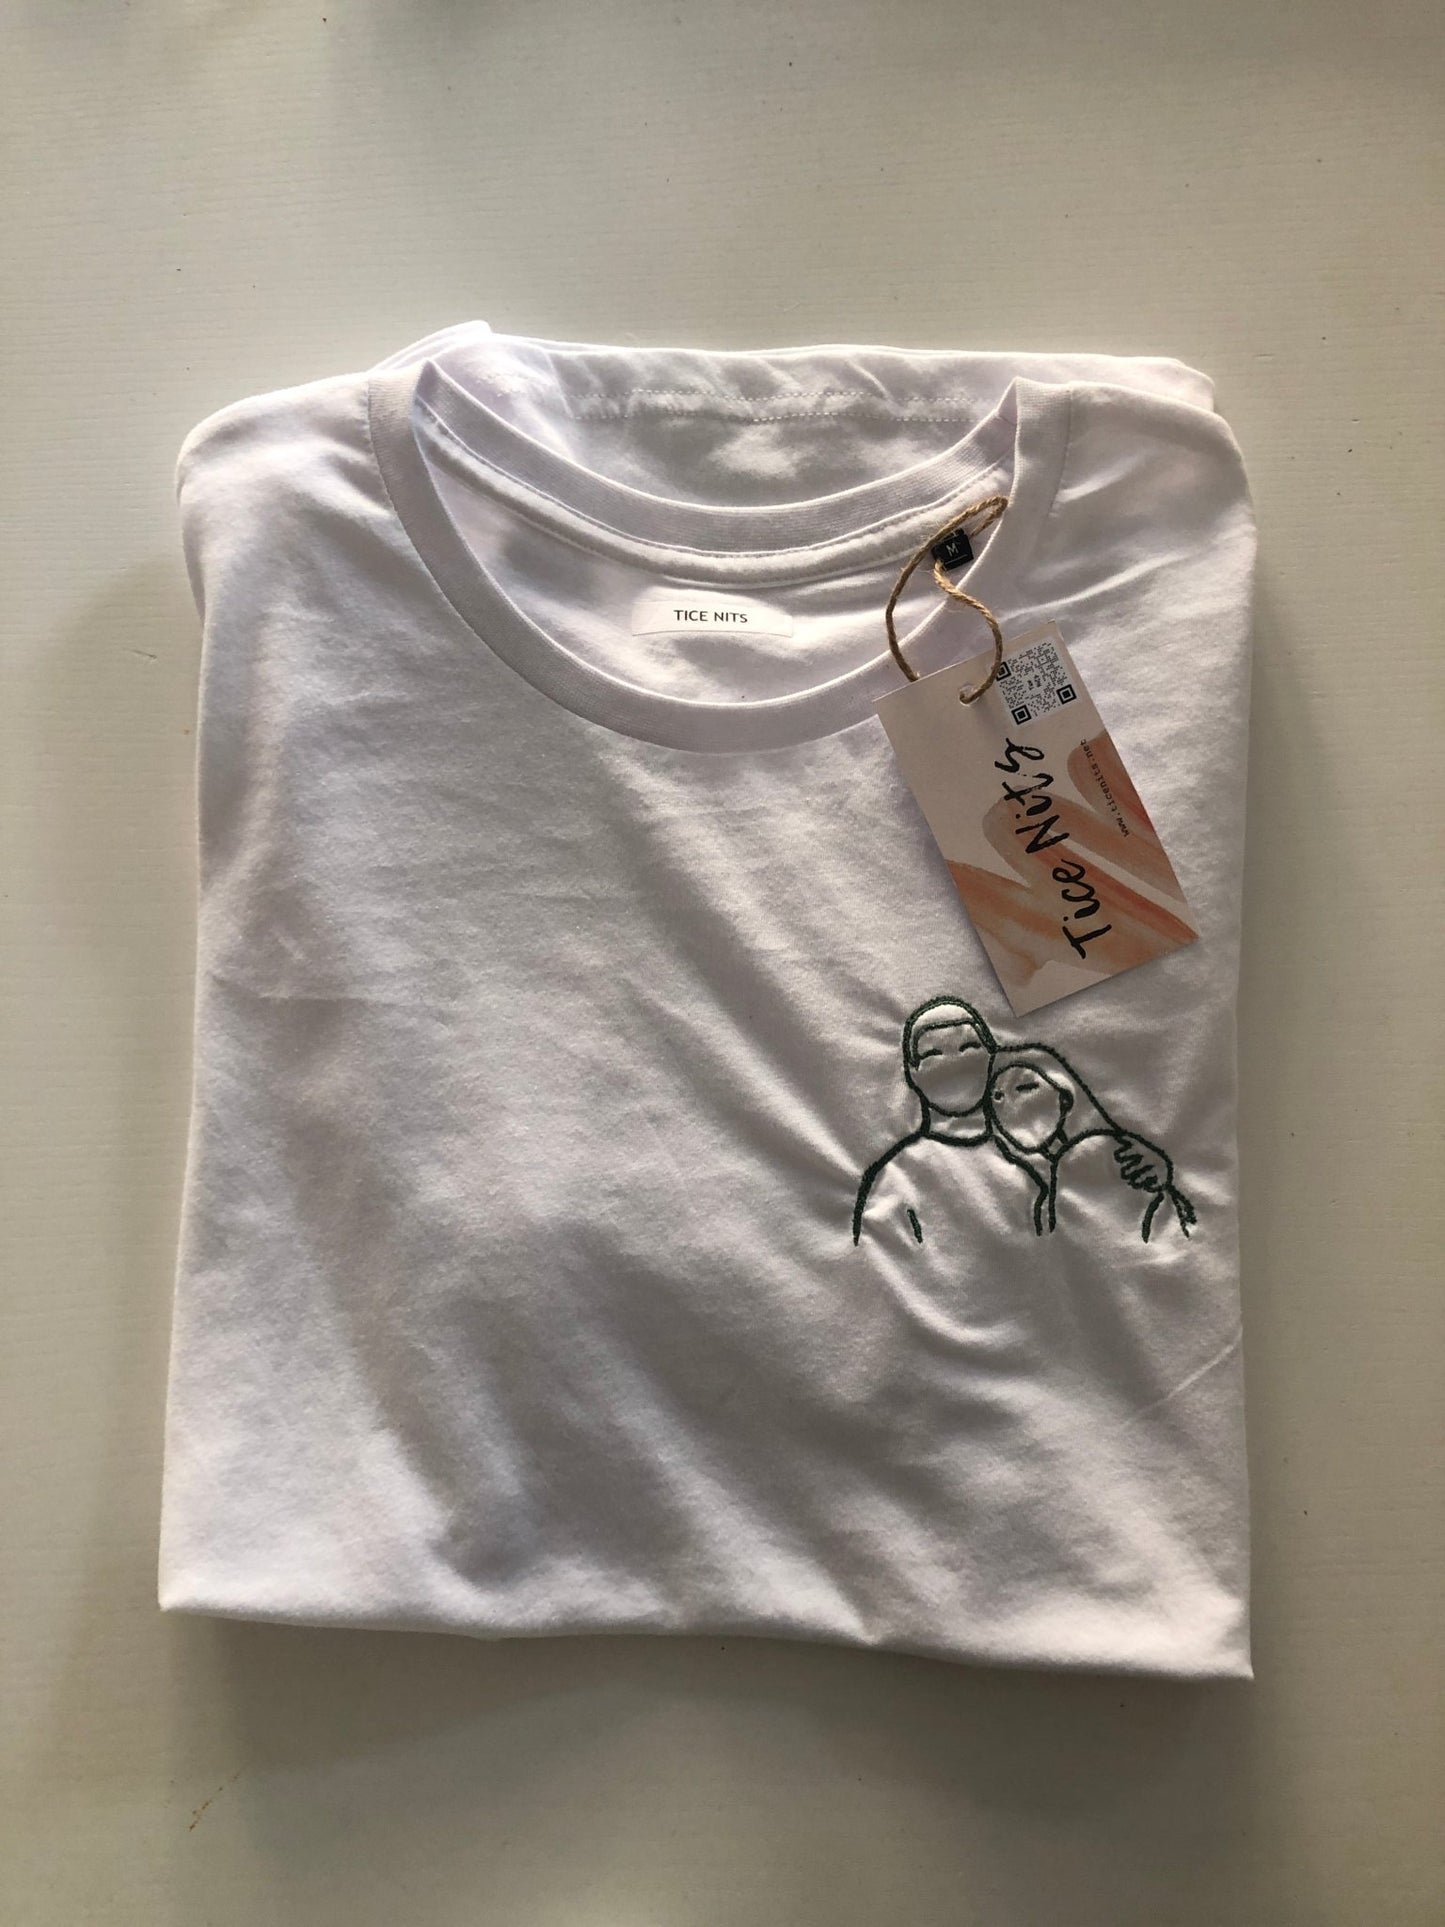 T-shirt met lijntekening (klein) - Tice Nits - T-shirt